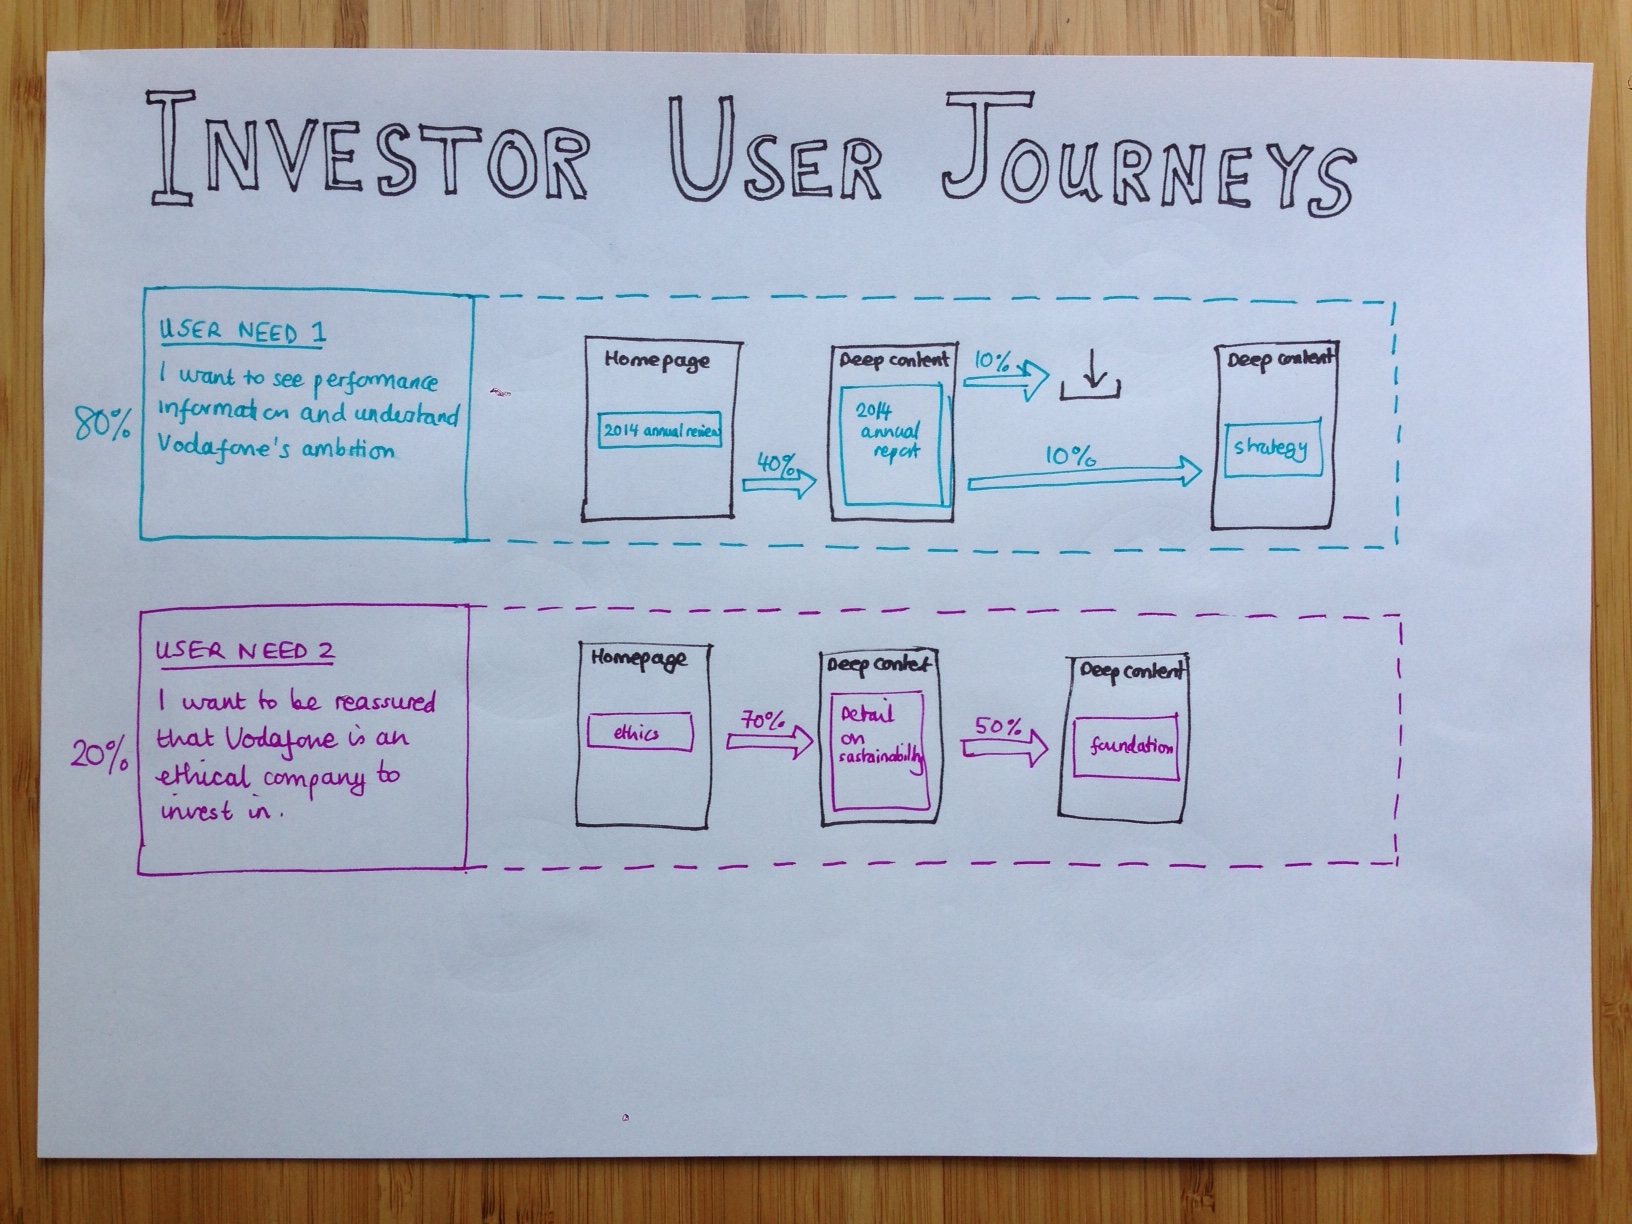 User journey for an investor